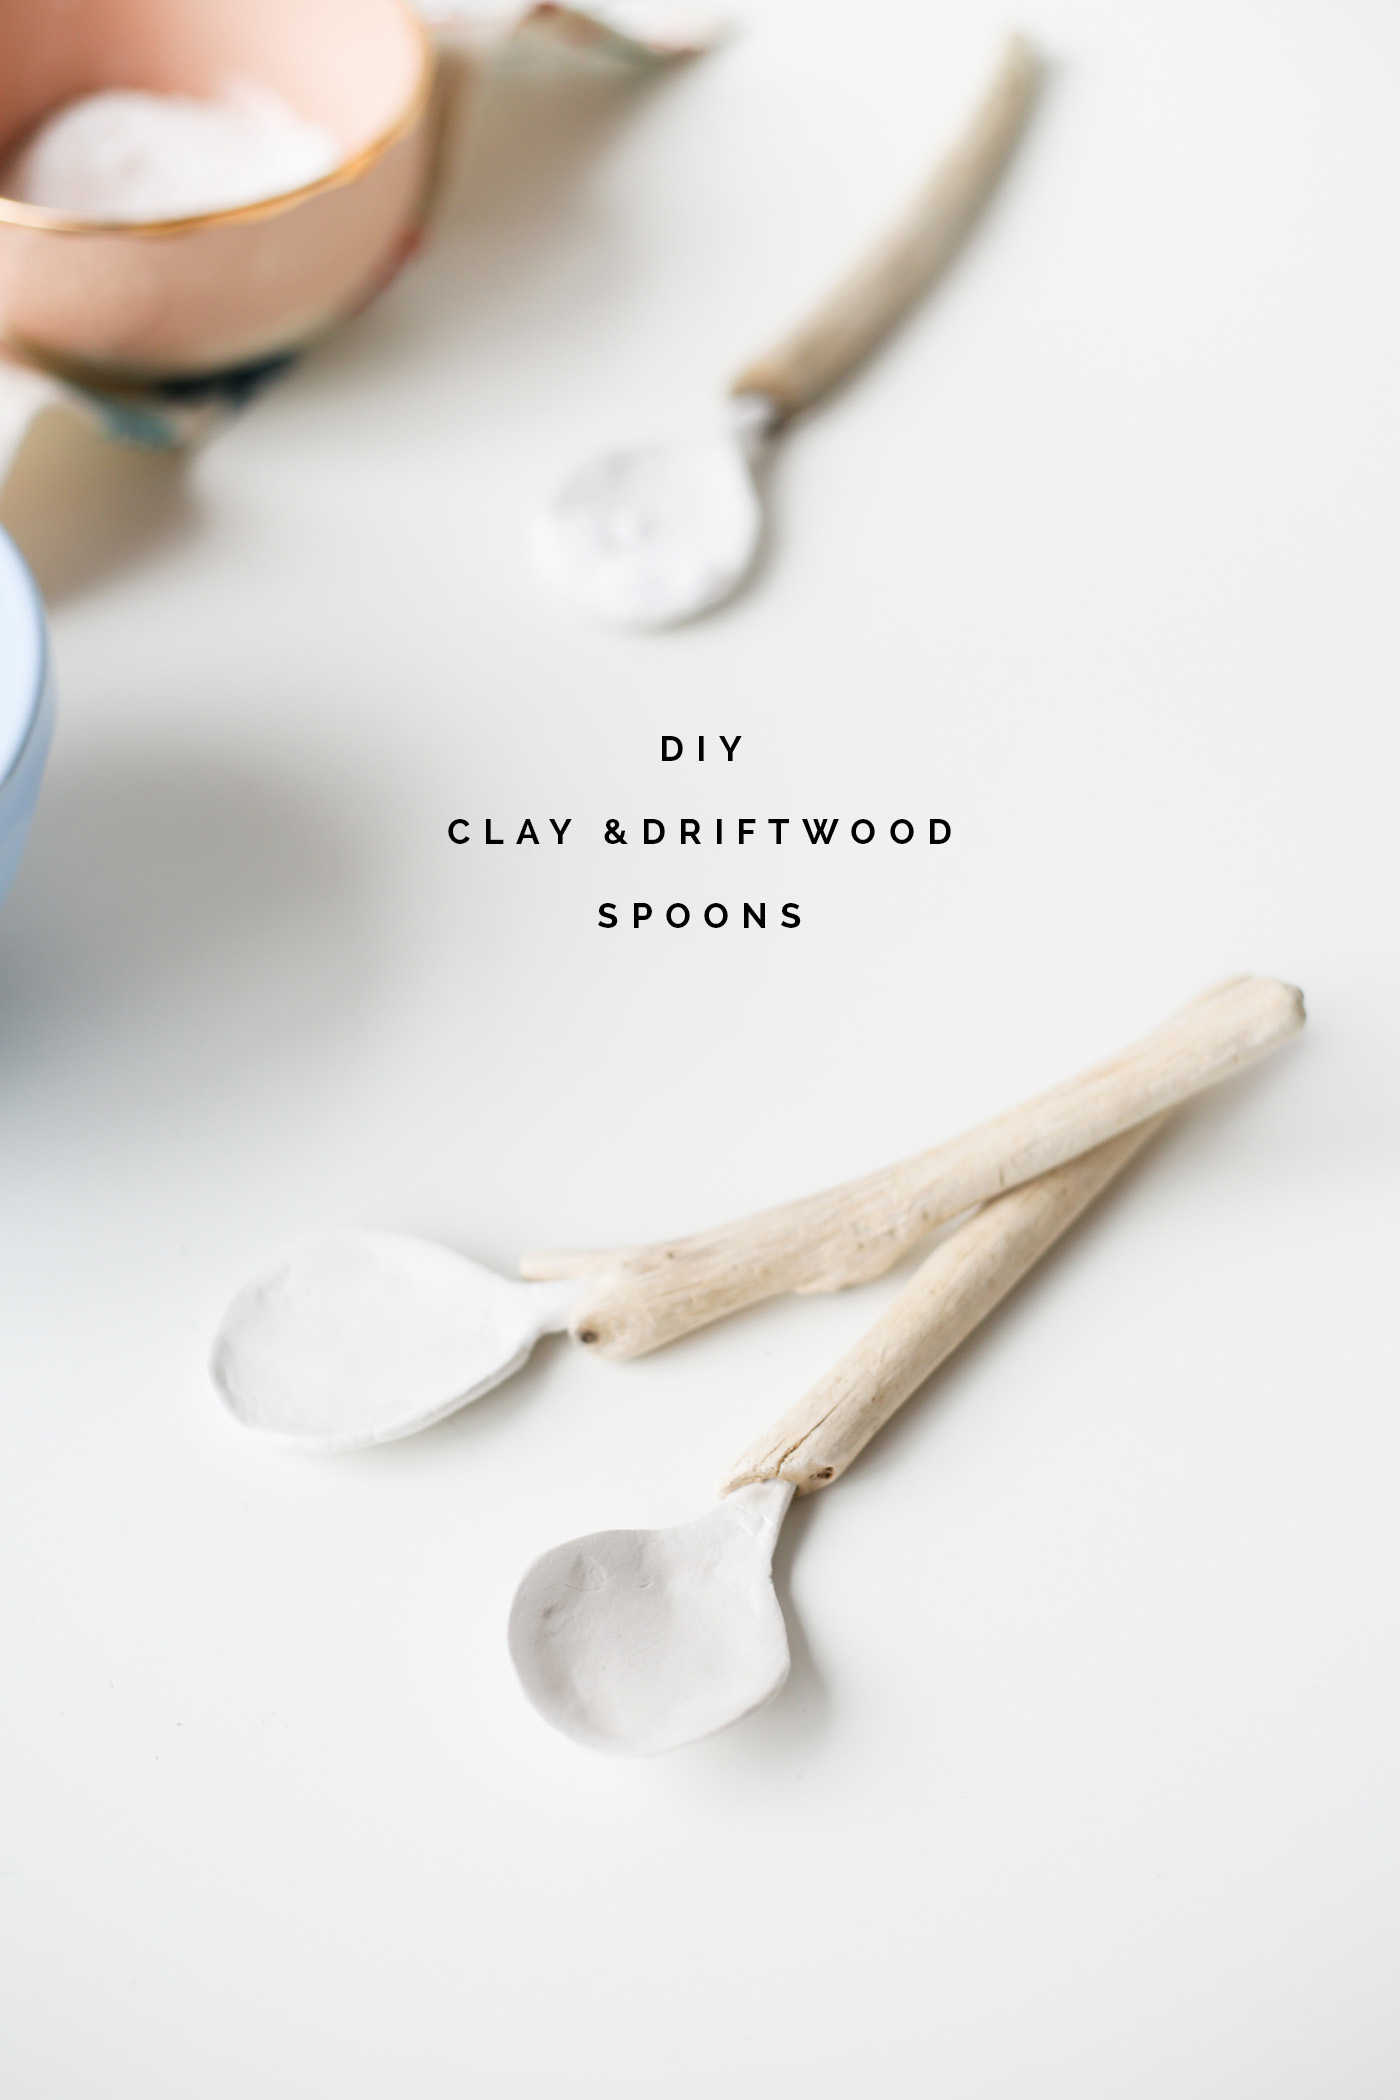 DIY Clay & Driftwood Spoons tutorial | @fallfordiy